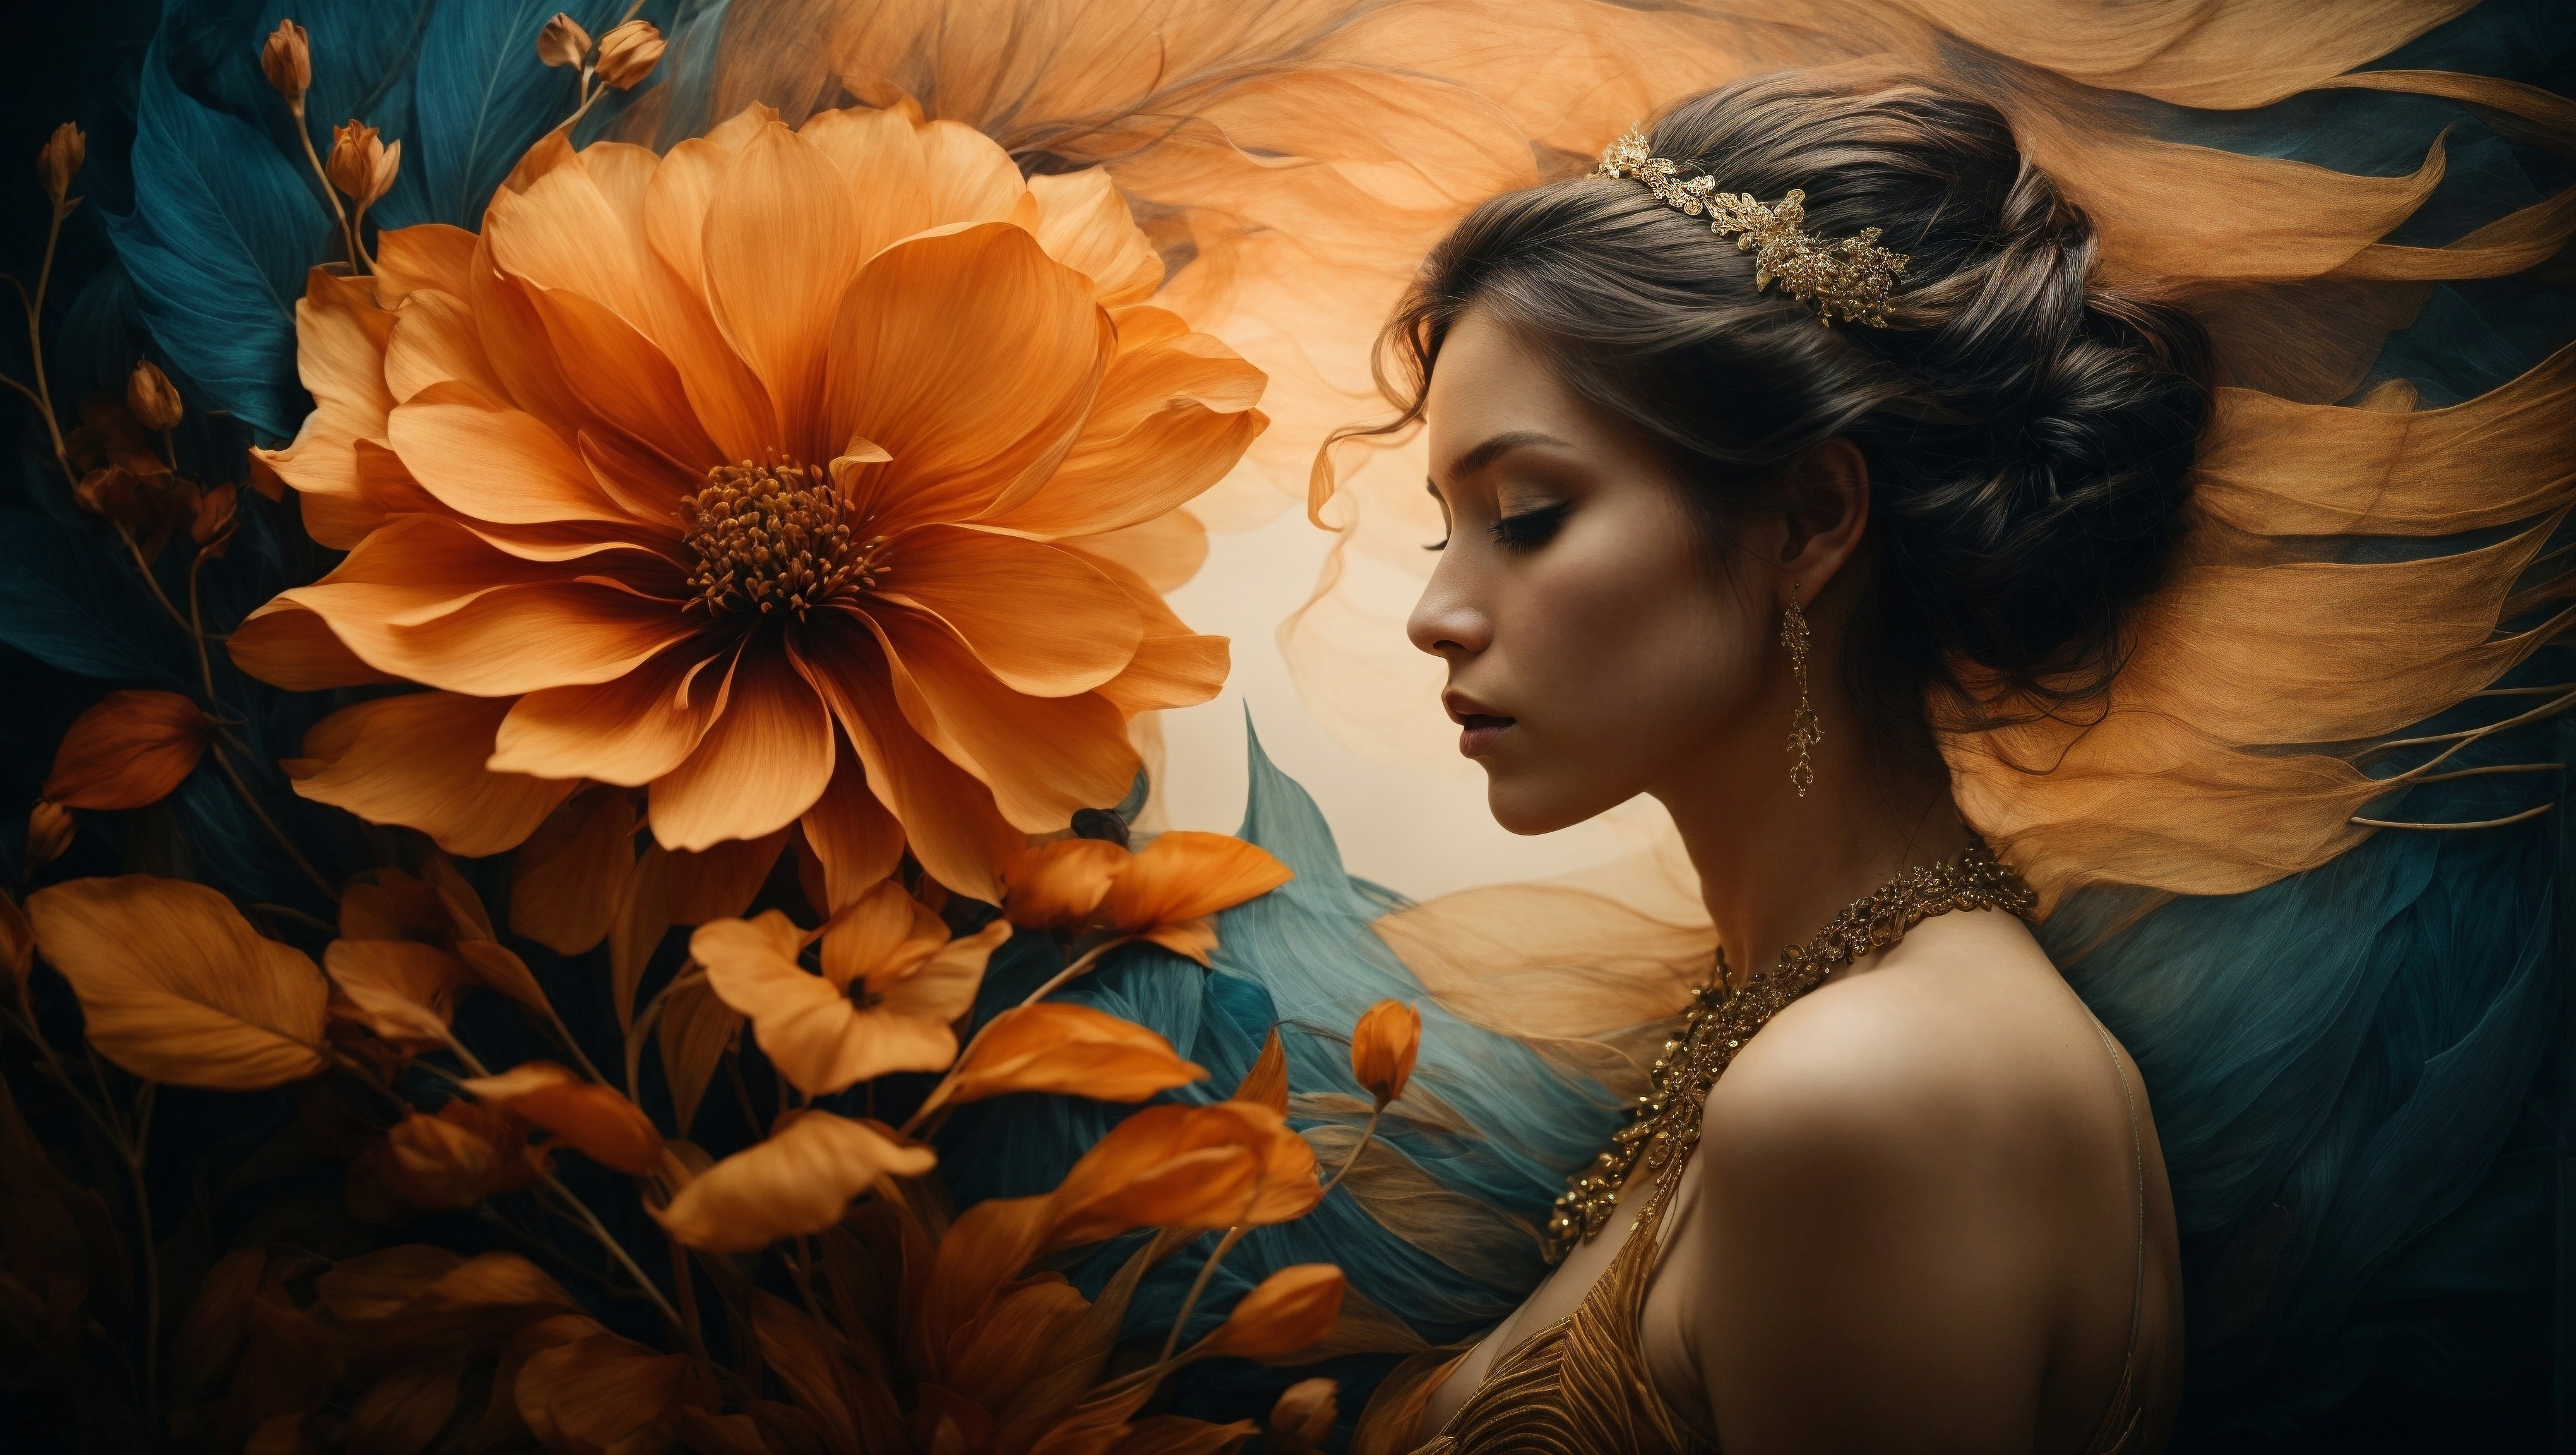 Бесплатное фото Женщина с оранжевым цветком в окружении ярких оранжевых цветов